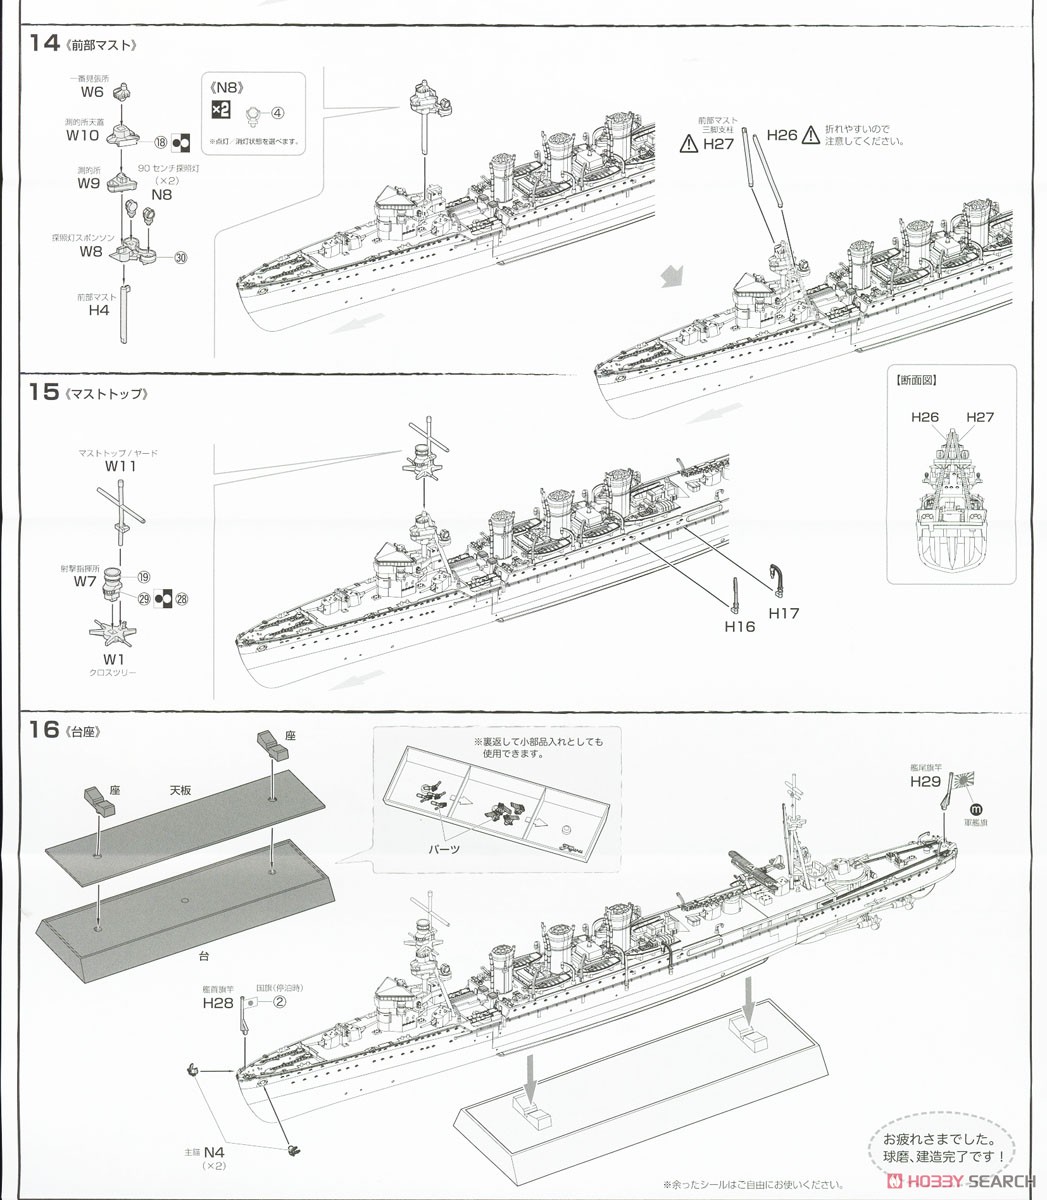 日本海軍軽巡洋艦 球磨 昭和17年 (プラモデル) 設計図6